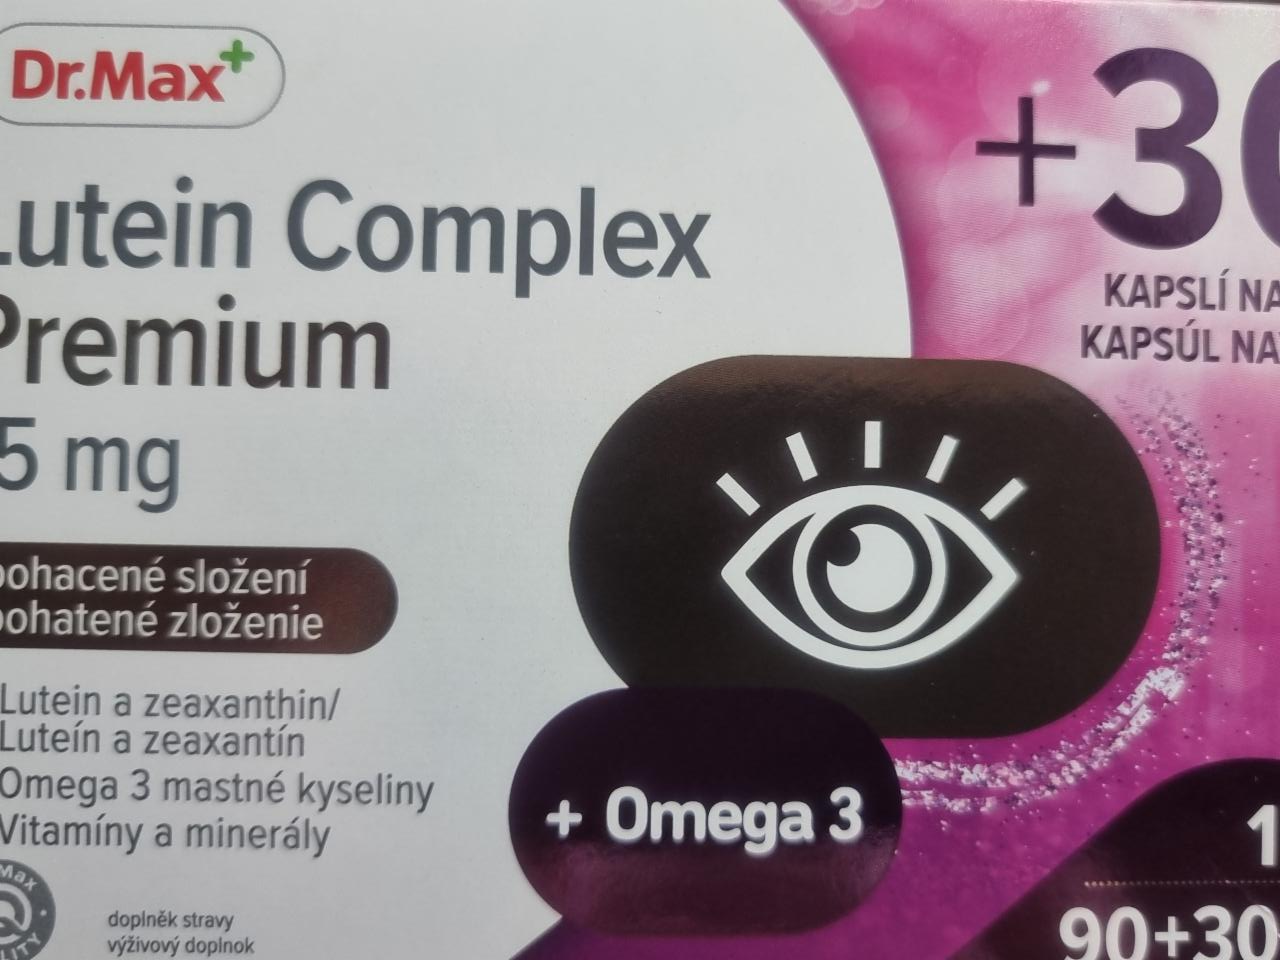 Fotografie - Lutein Complex Premium 15 mg